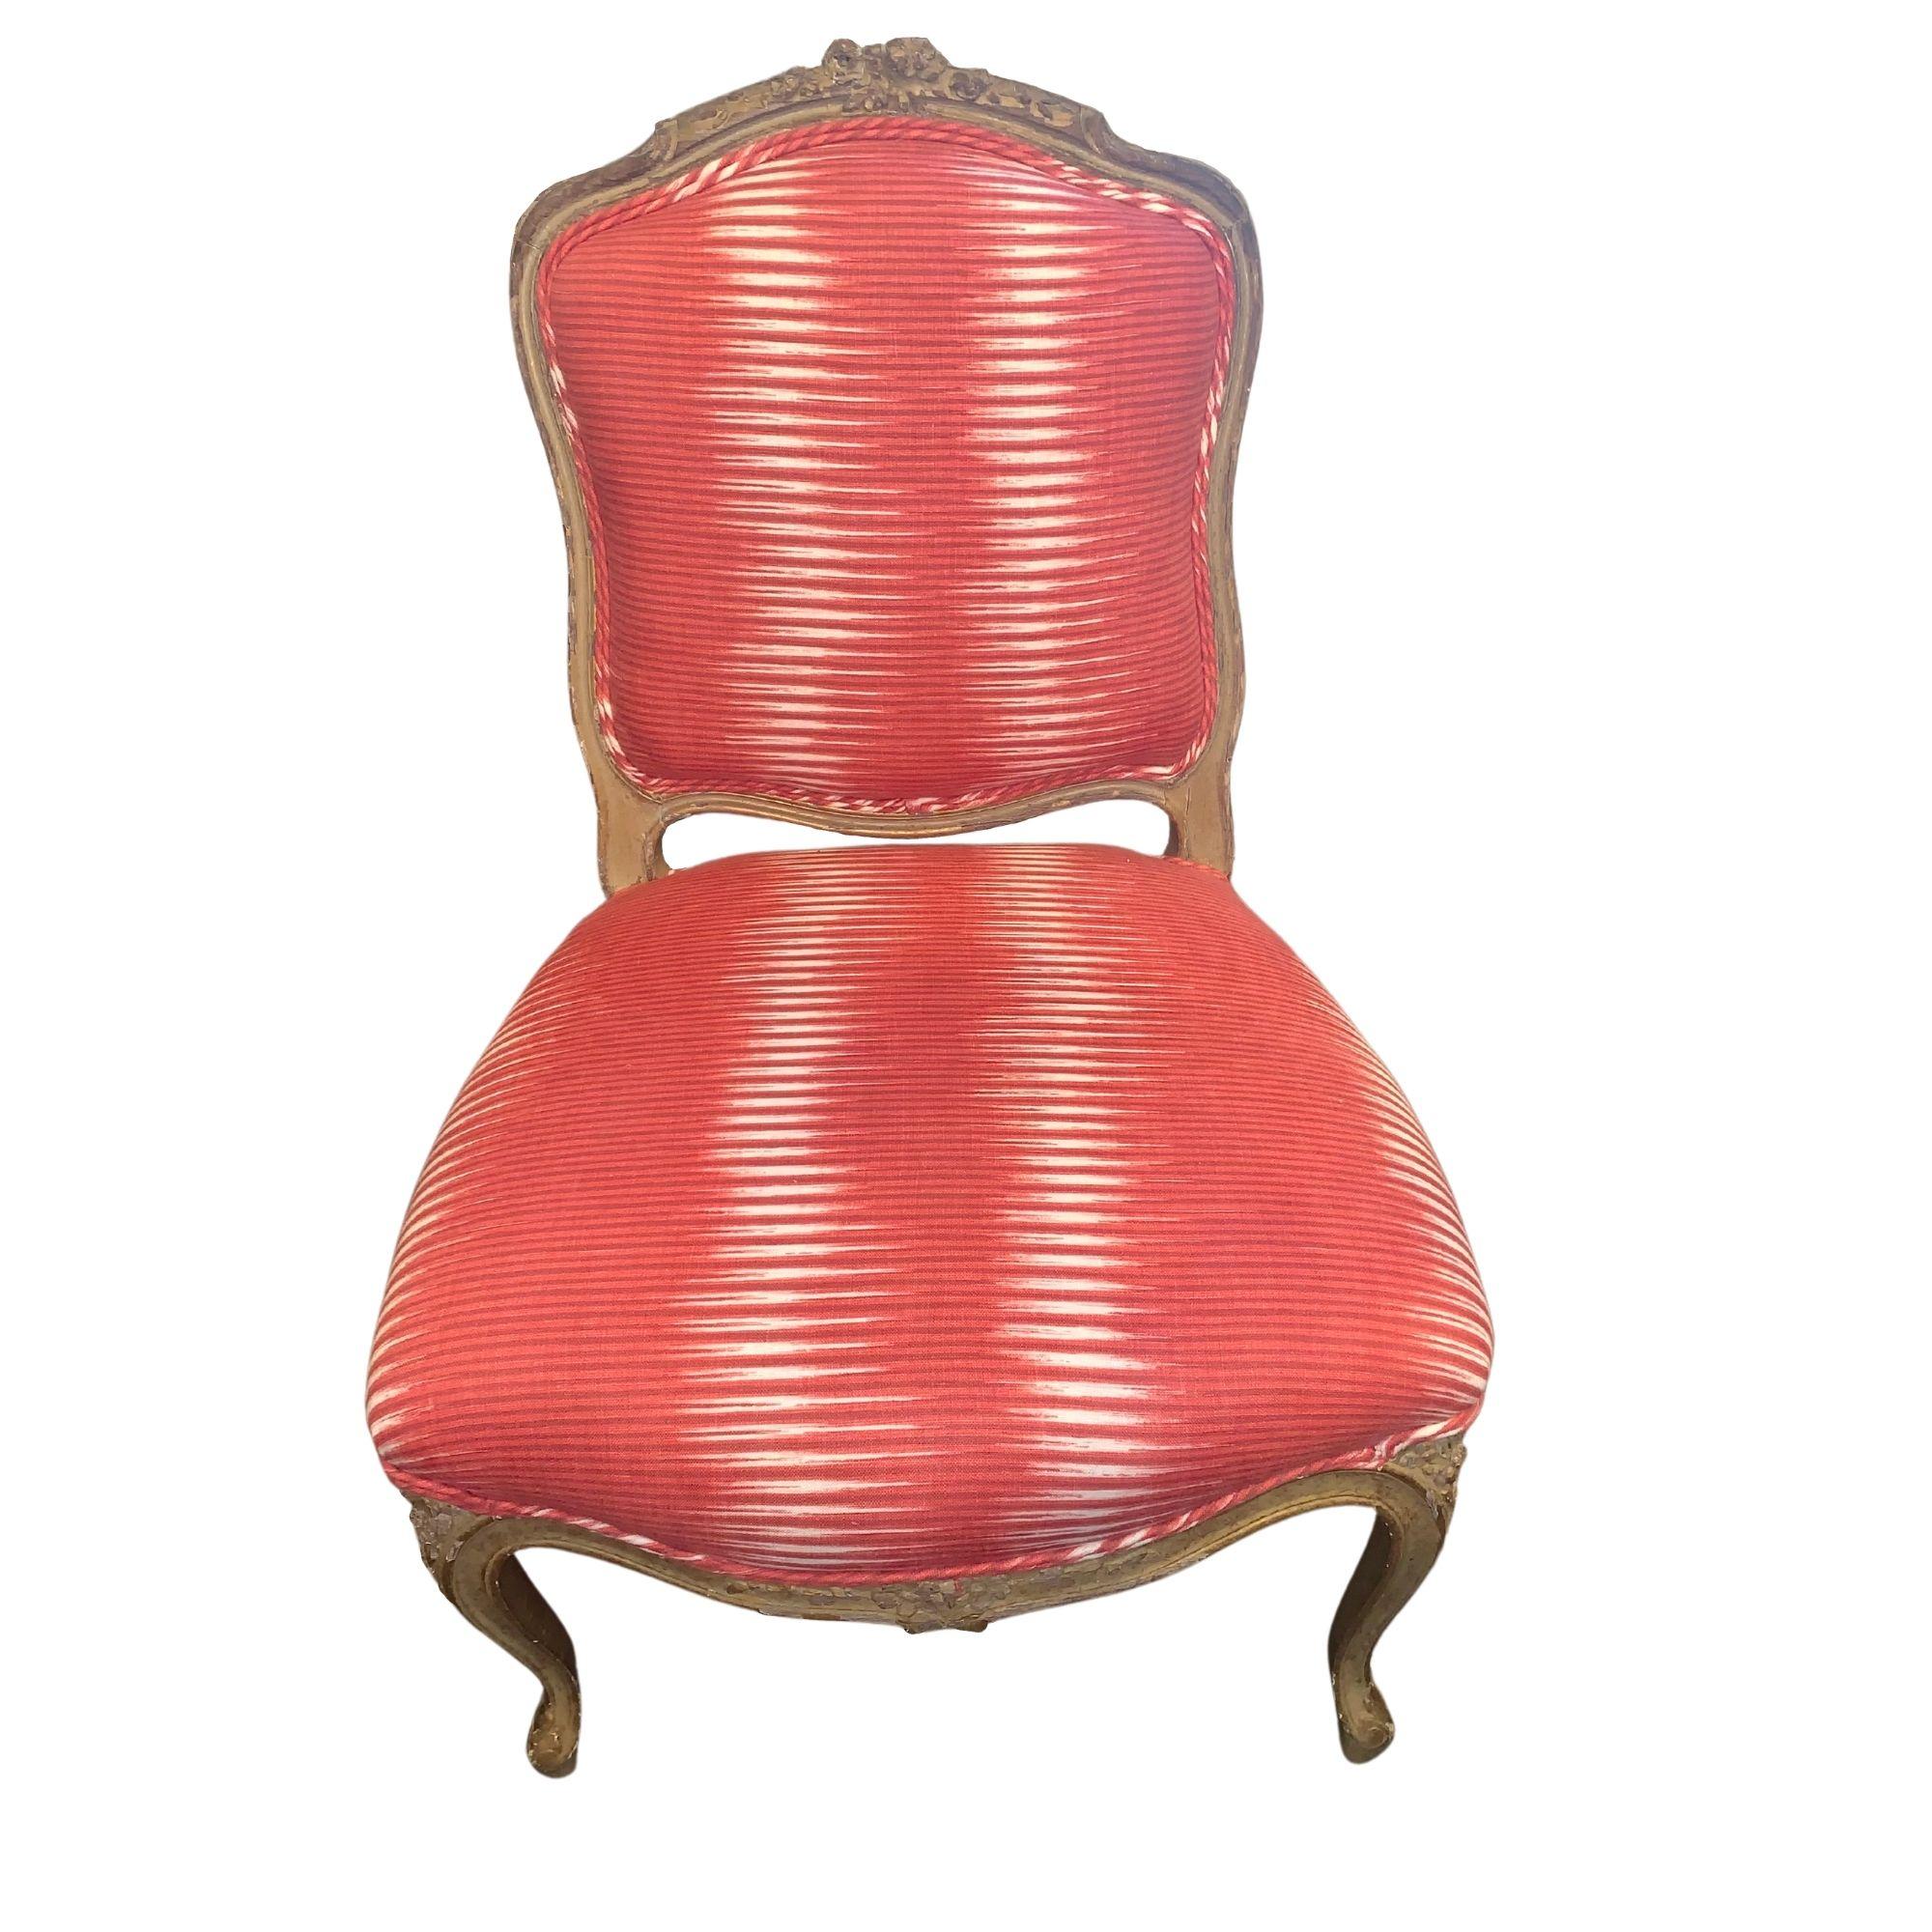 chaise française du 19e siècle recouverte du tissu Cosmico Ikat in Carmine de Michelle Nussbaumer, de sa collection pour Clarence House.